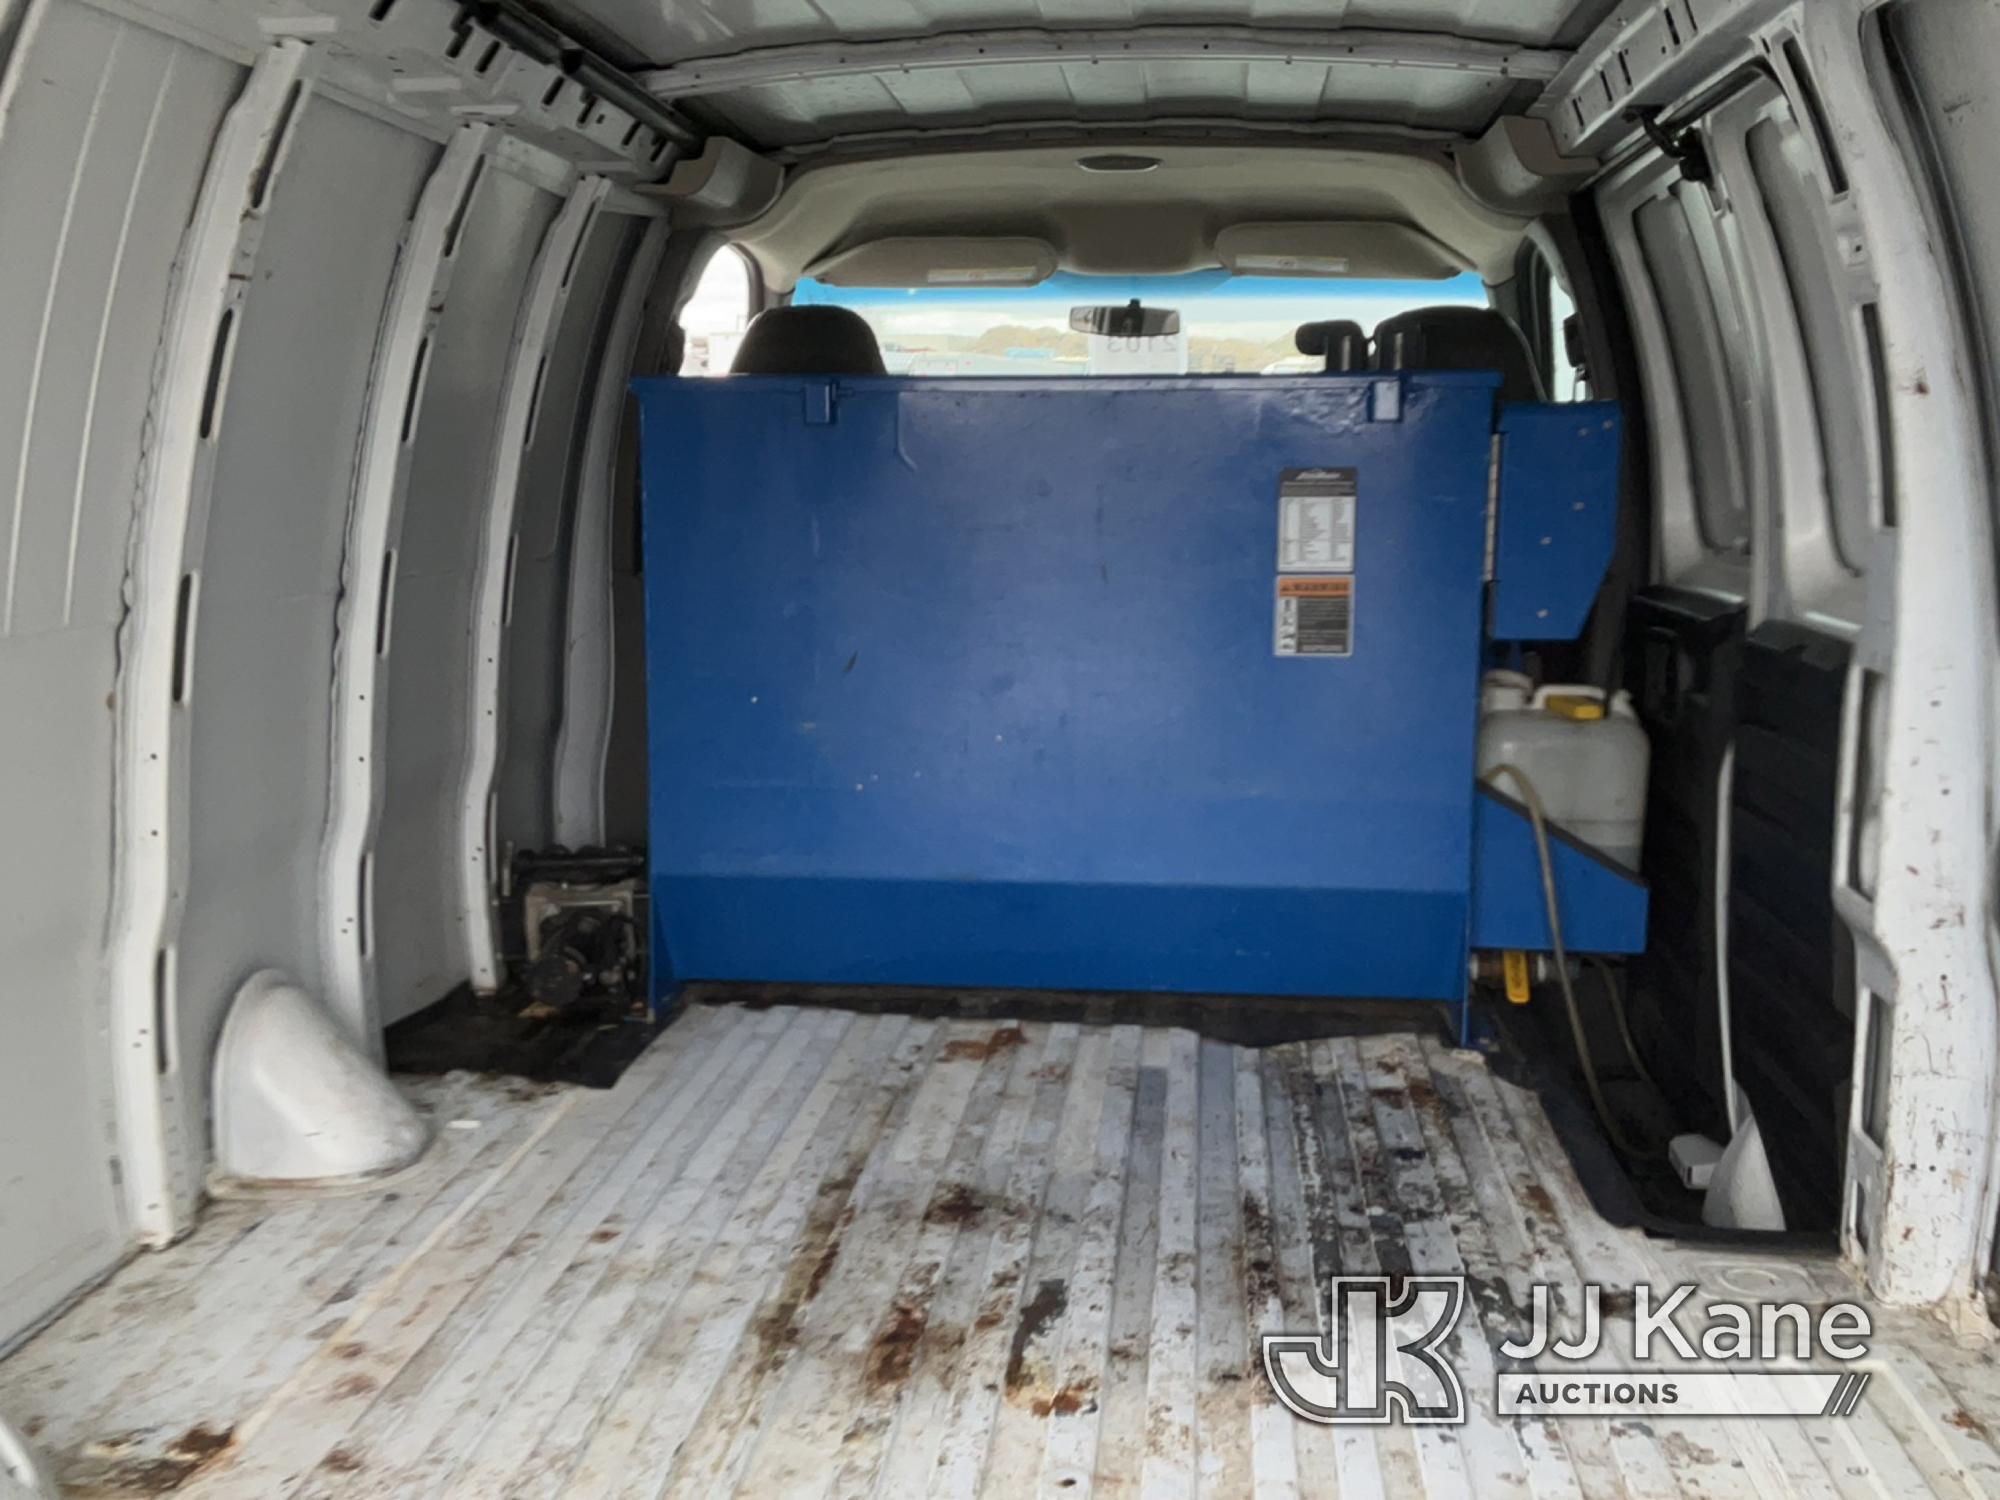 (Salt Lake City, UT) 2010 Chevrolet Express G2500 Cargo Van Runs & Moves) (Battery Light On